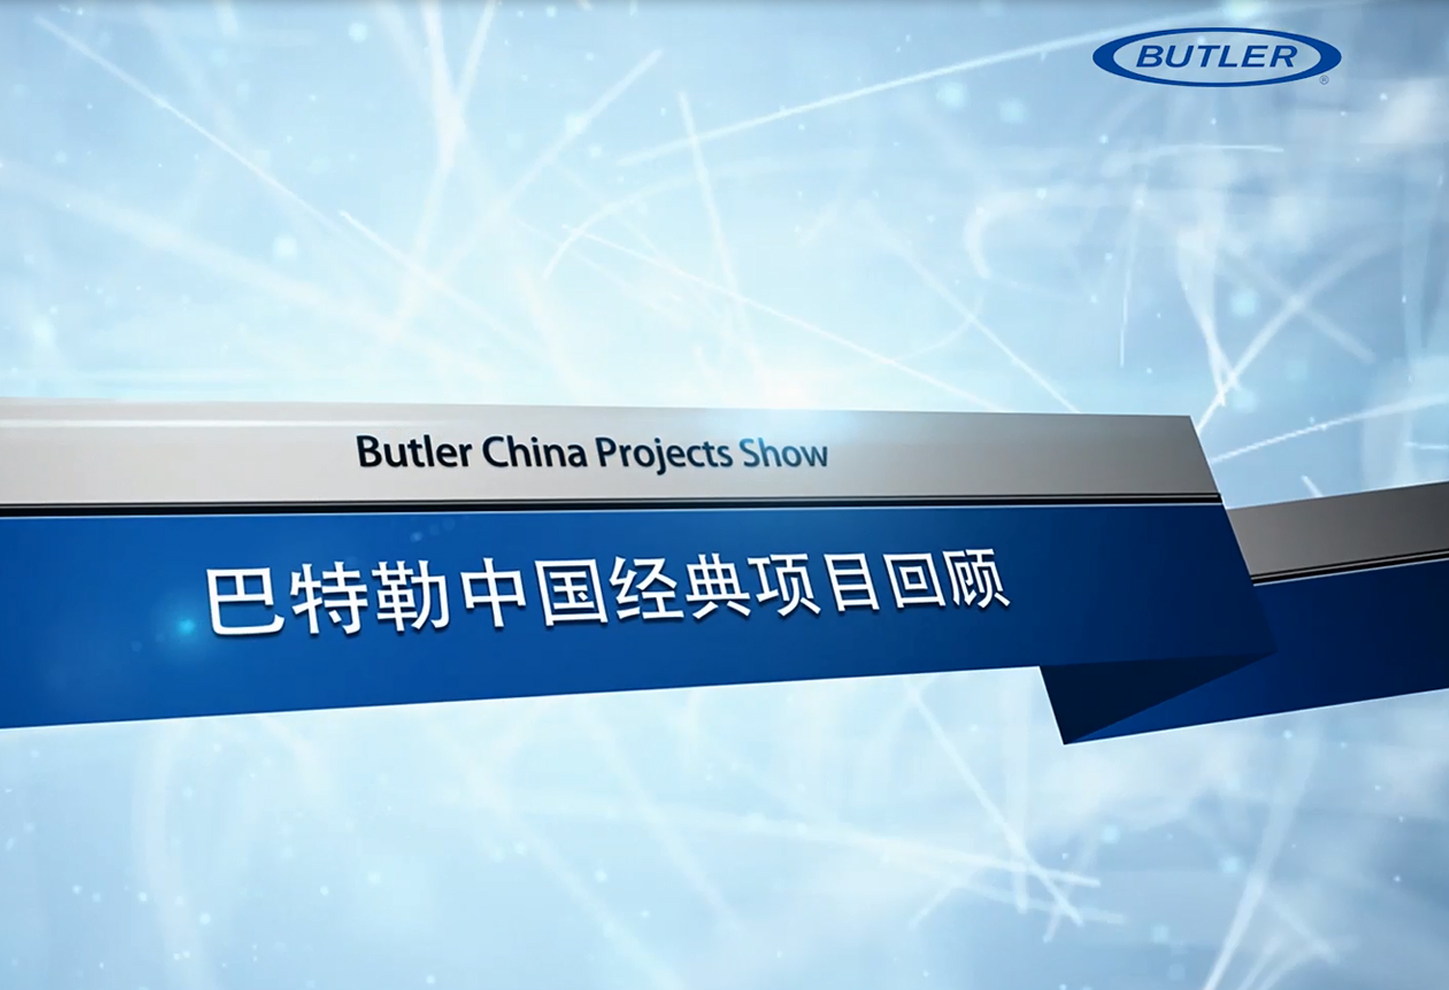 巴特勒中国项目回顾 Butler China Projects Show.jpg